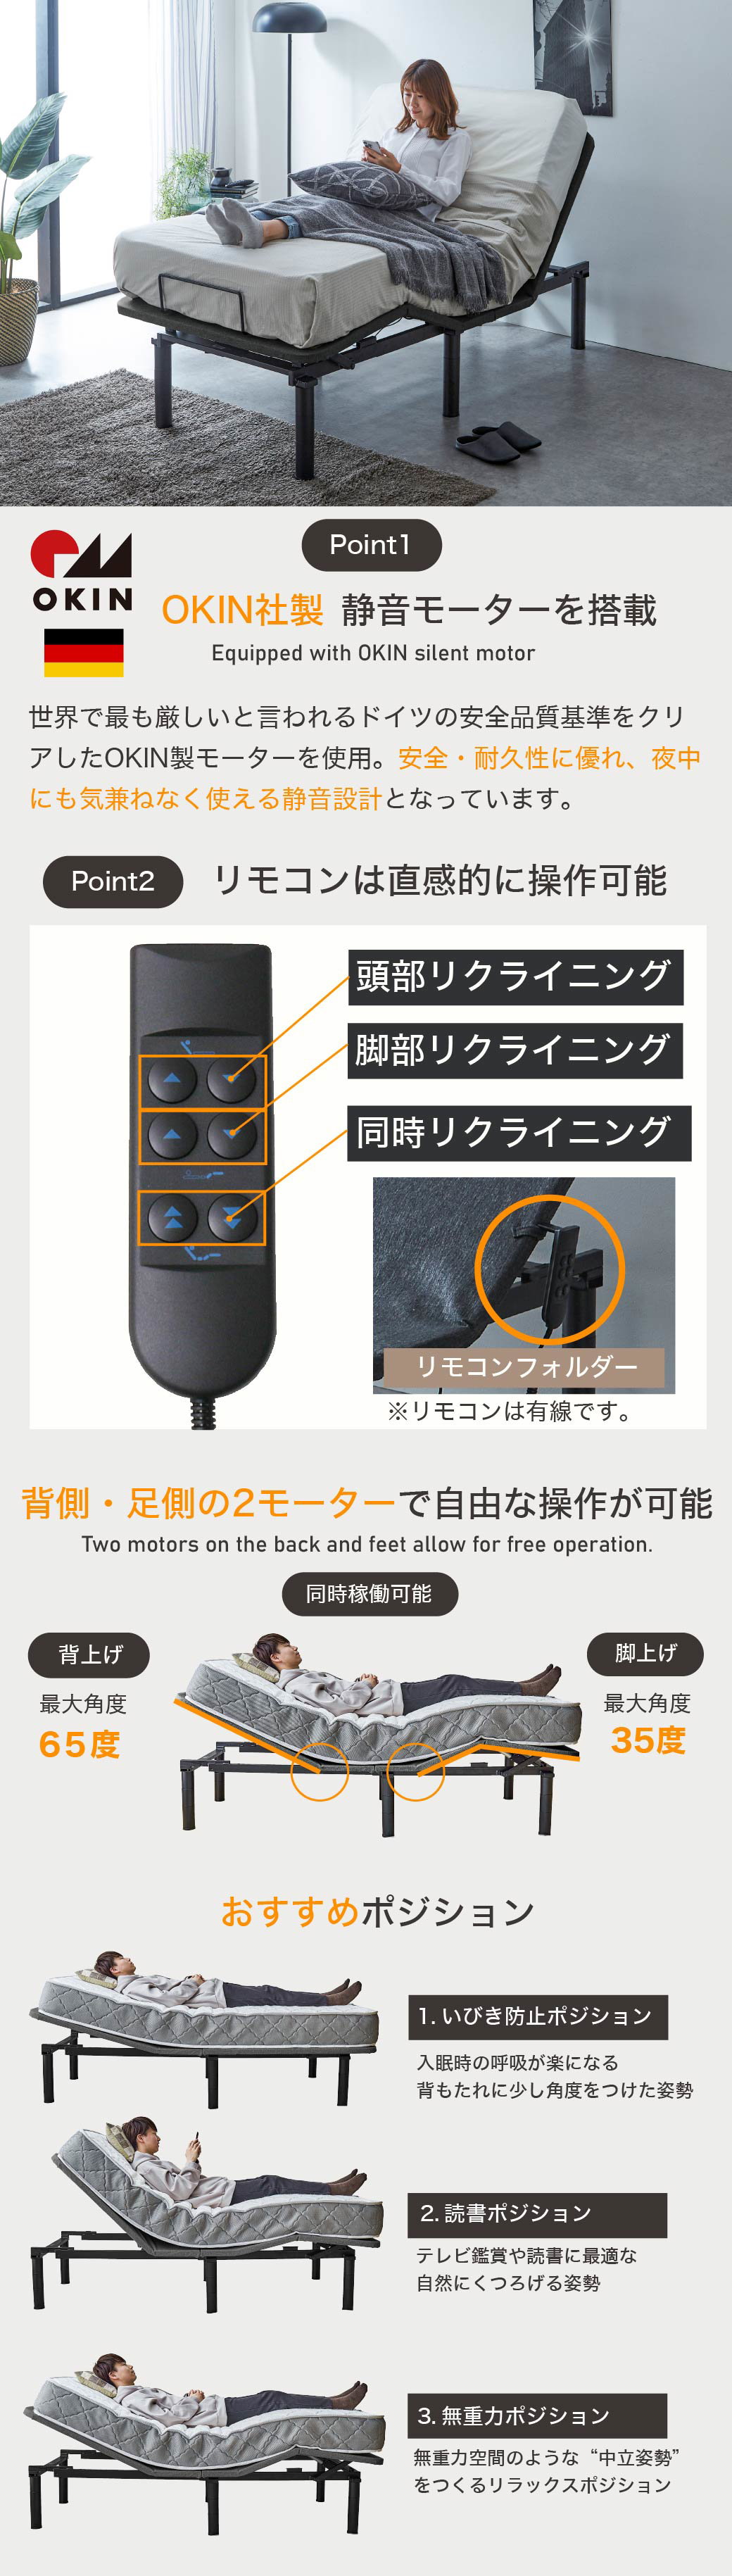 OKIN社製静音モーターを使用しています。